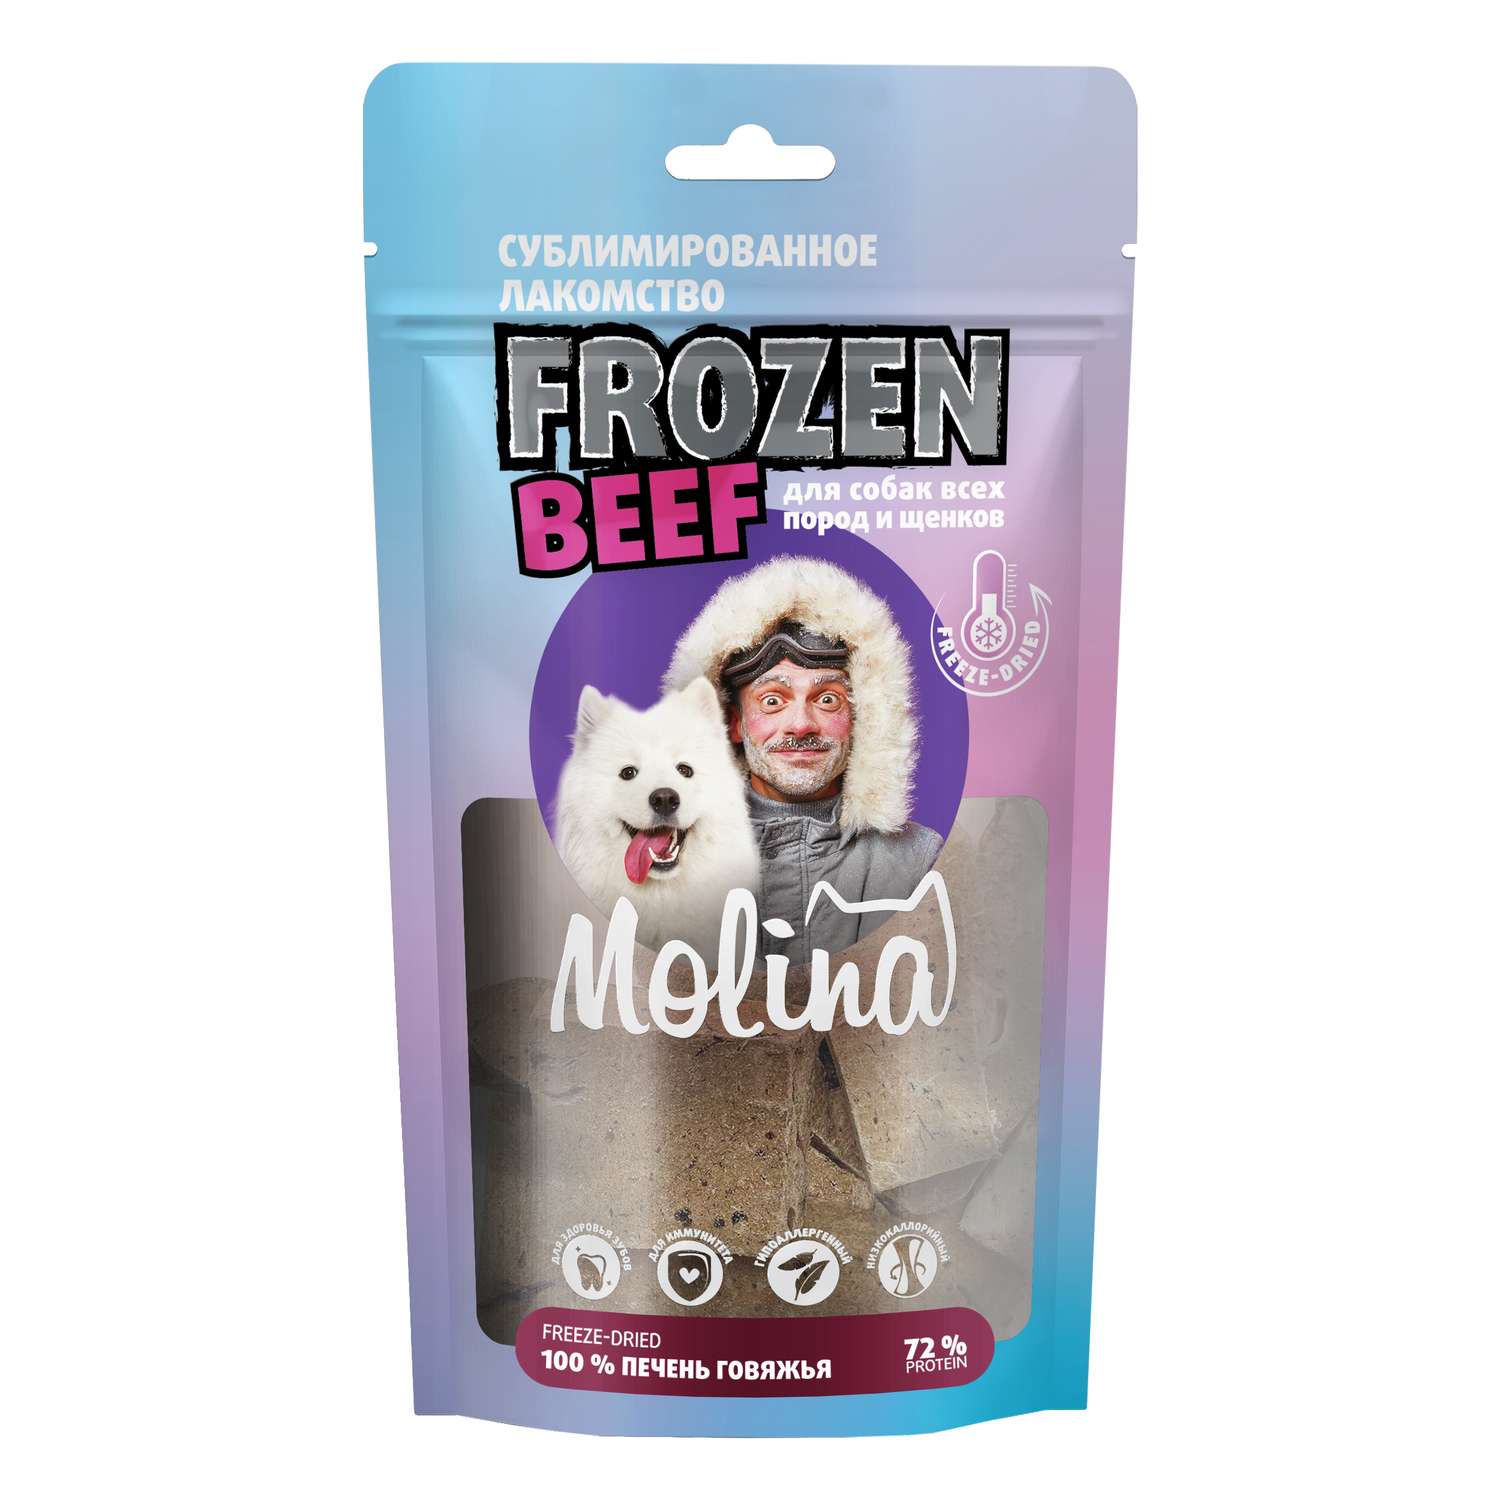 Лакомство для собак и щенков Molina 55г сублимированное печень говяжья - фото 1